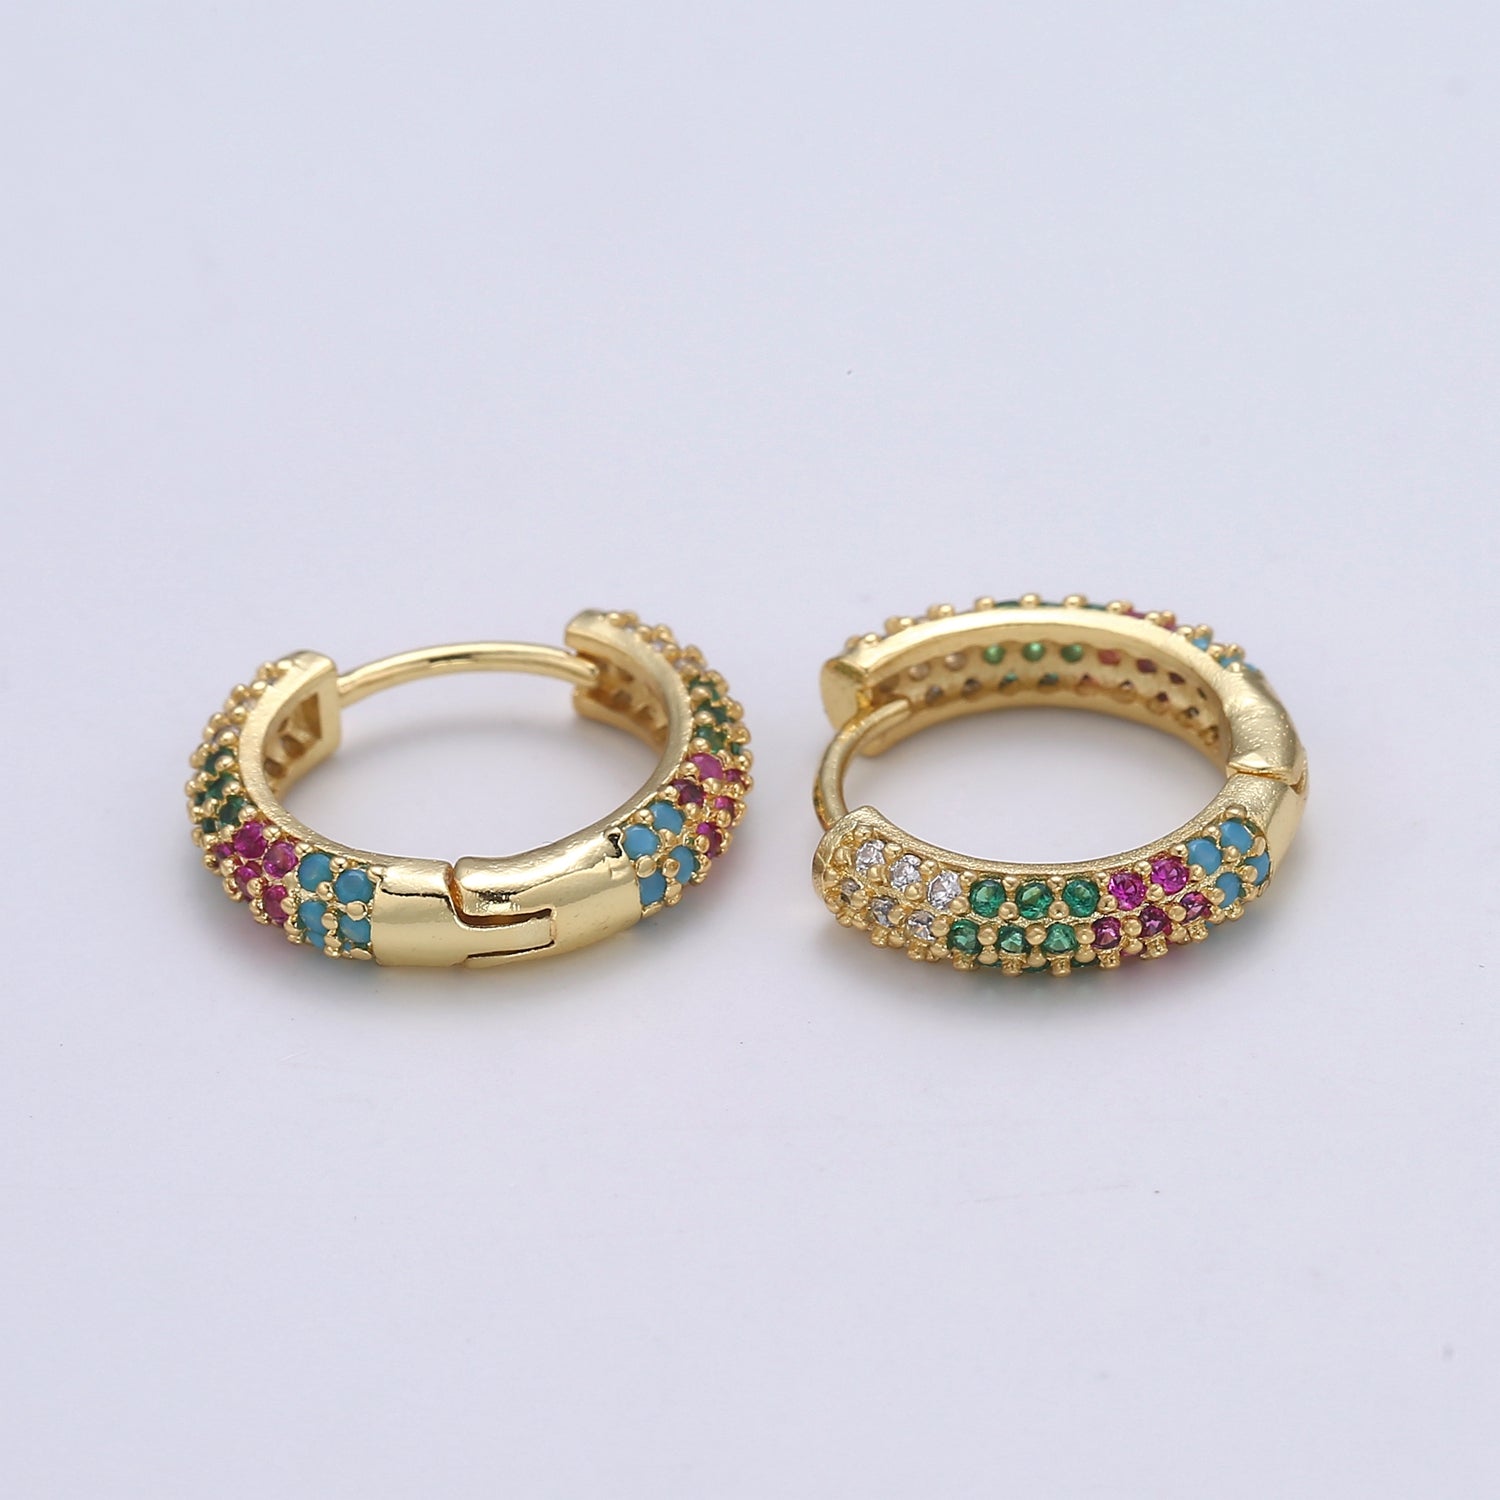 1 pair Hoops - Black, Blue, Clear, Red, Green, Multi-color Zirconia or Teal Gold CZ earrings - 24K Gold Huggie hoops EARRING-1412 - 1418 - DLUXCA